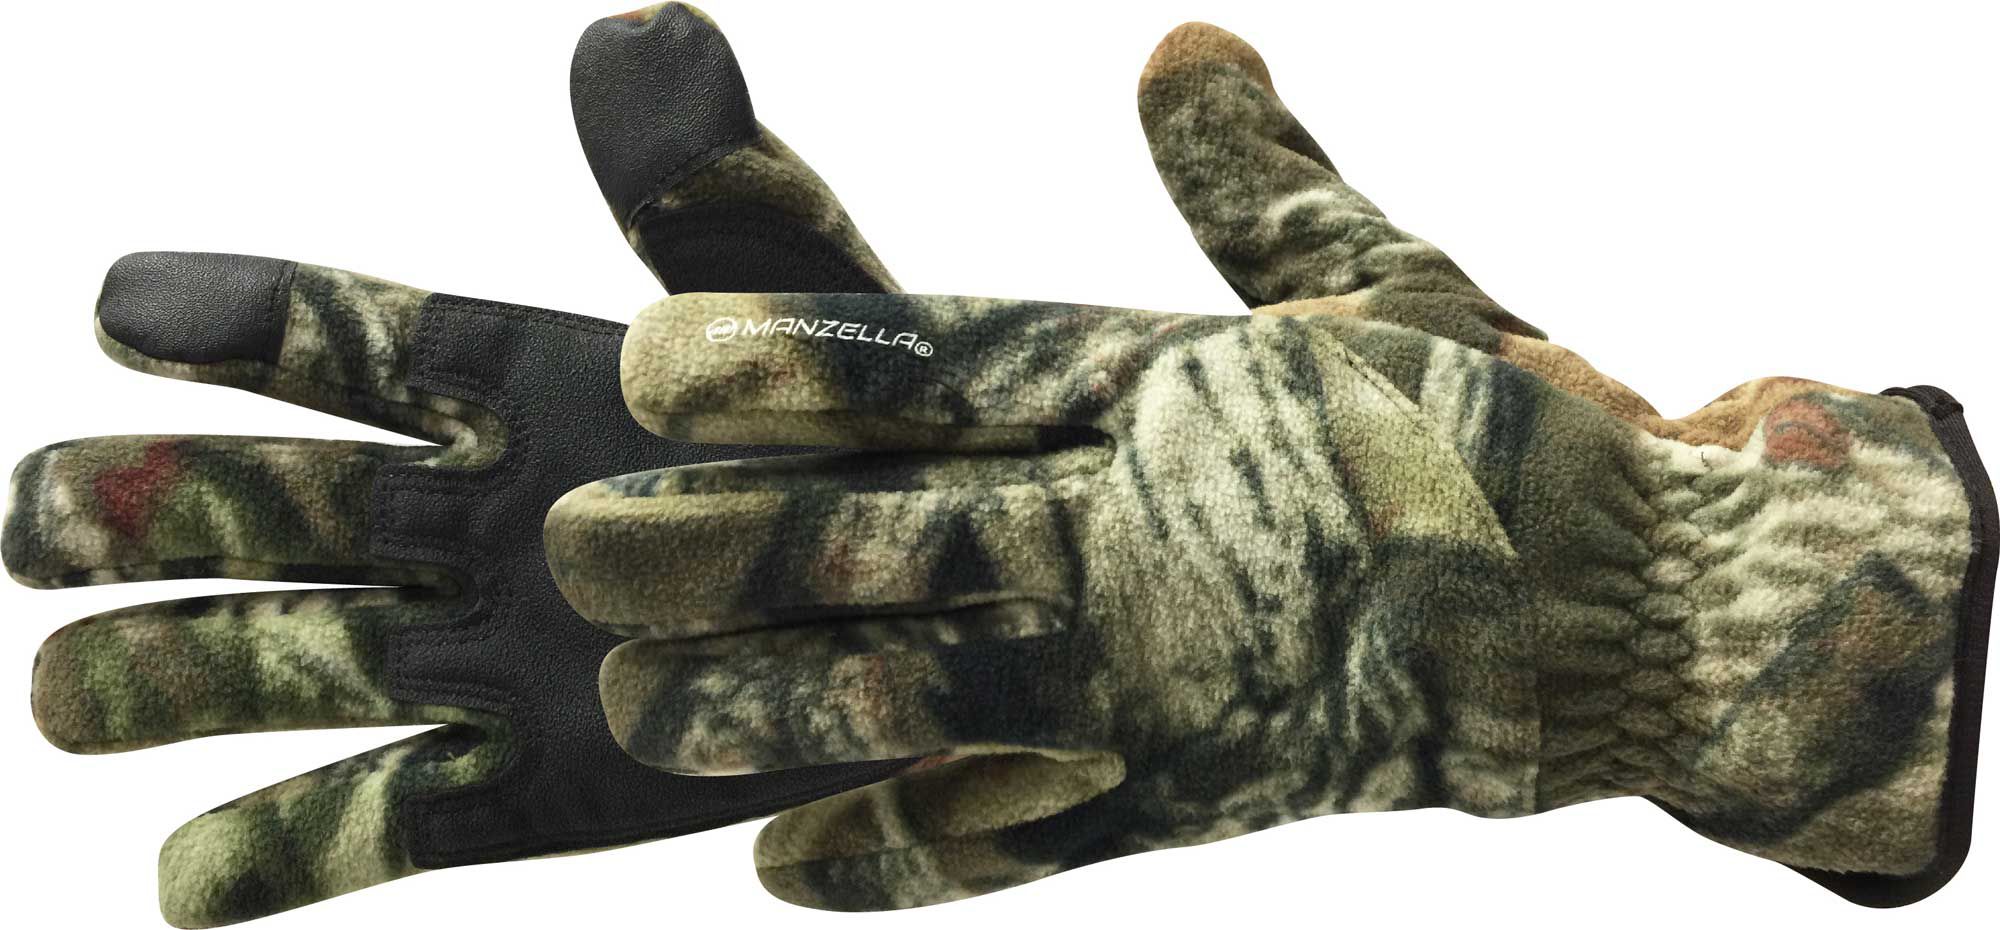 manzella gloves